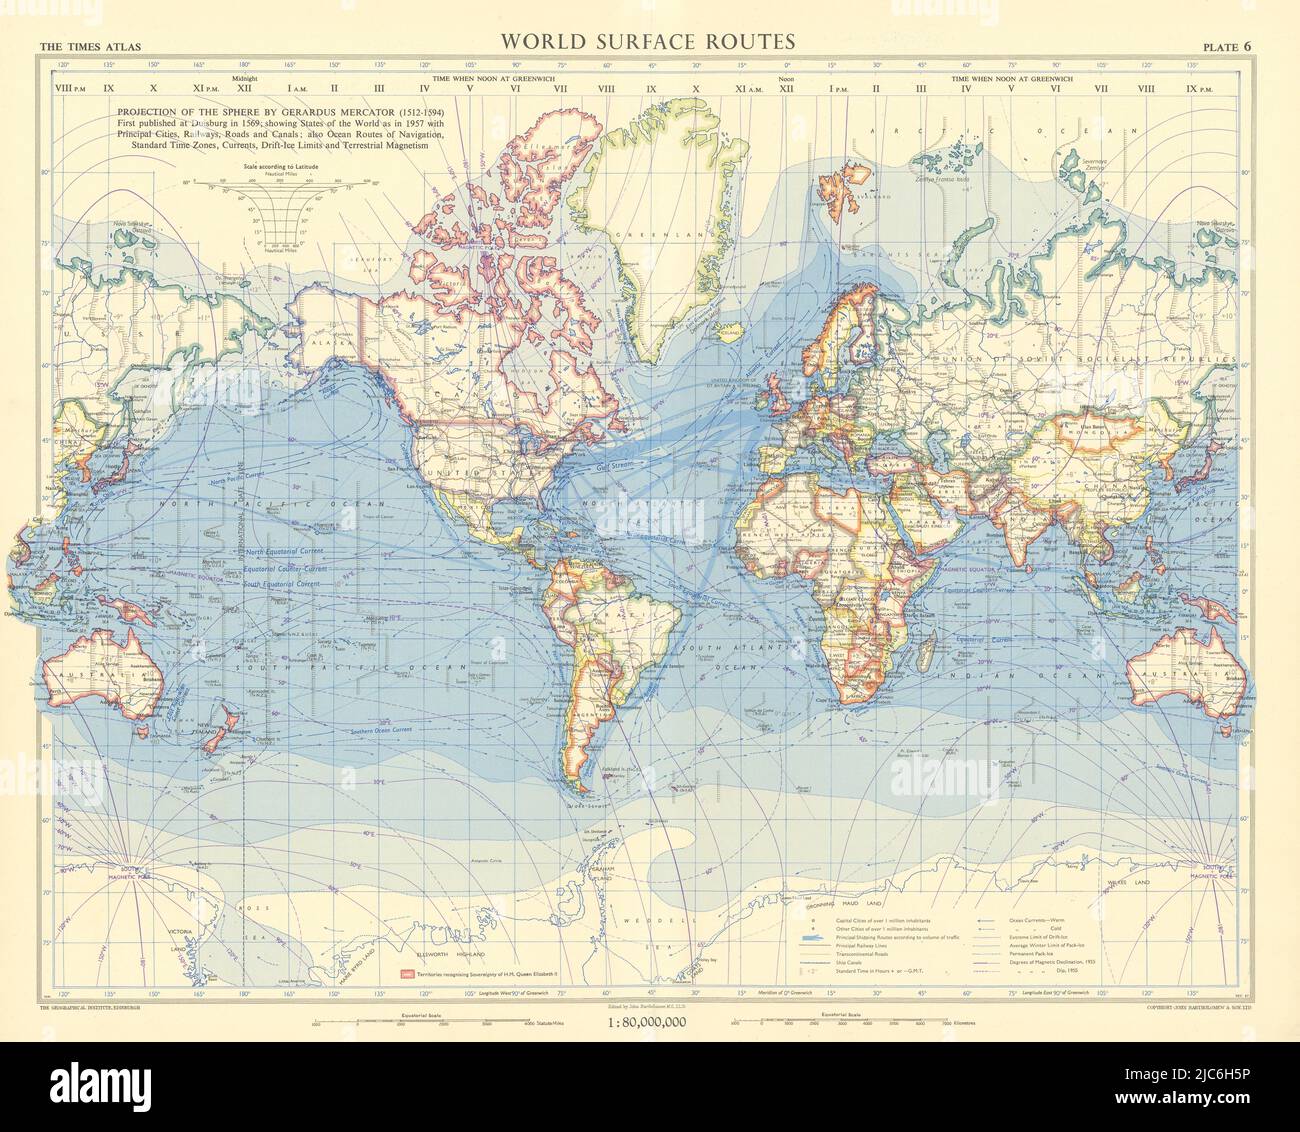 Routen über die Weltoberfläche. Schifffahrt und Eisenbahn. British Commonwealth. TIMES 1958 Karte Stockfoto